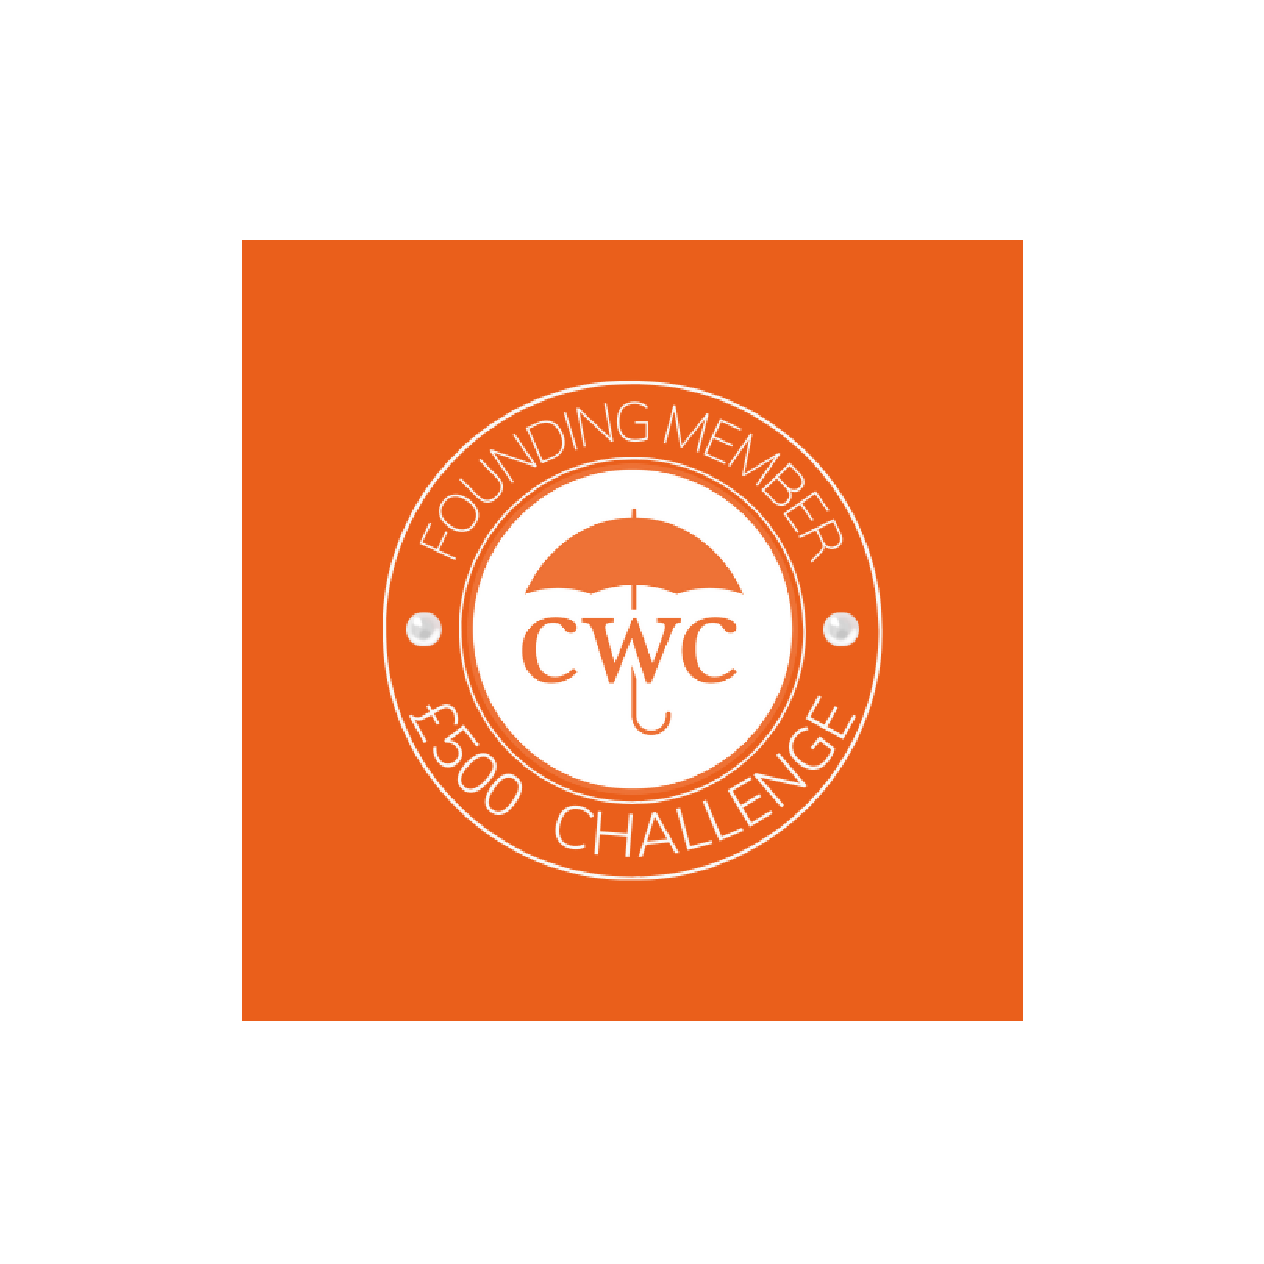 CWC founding member